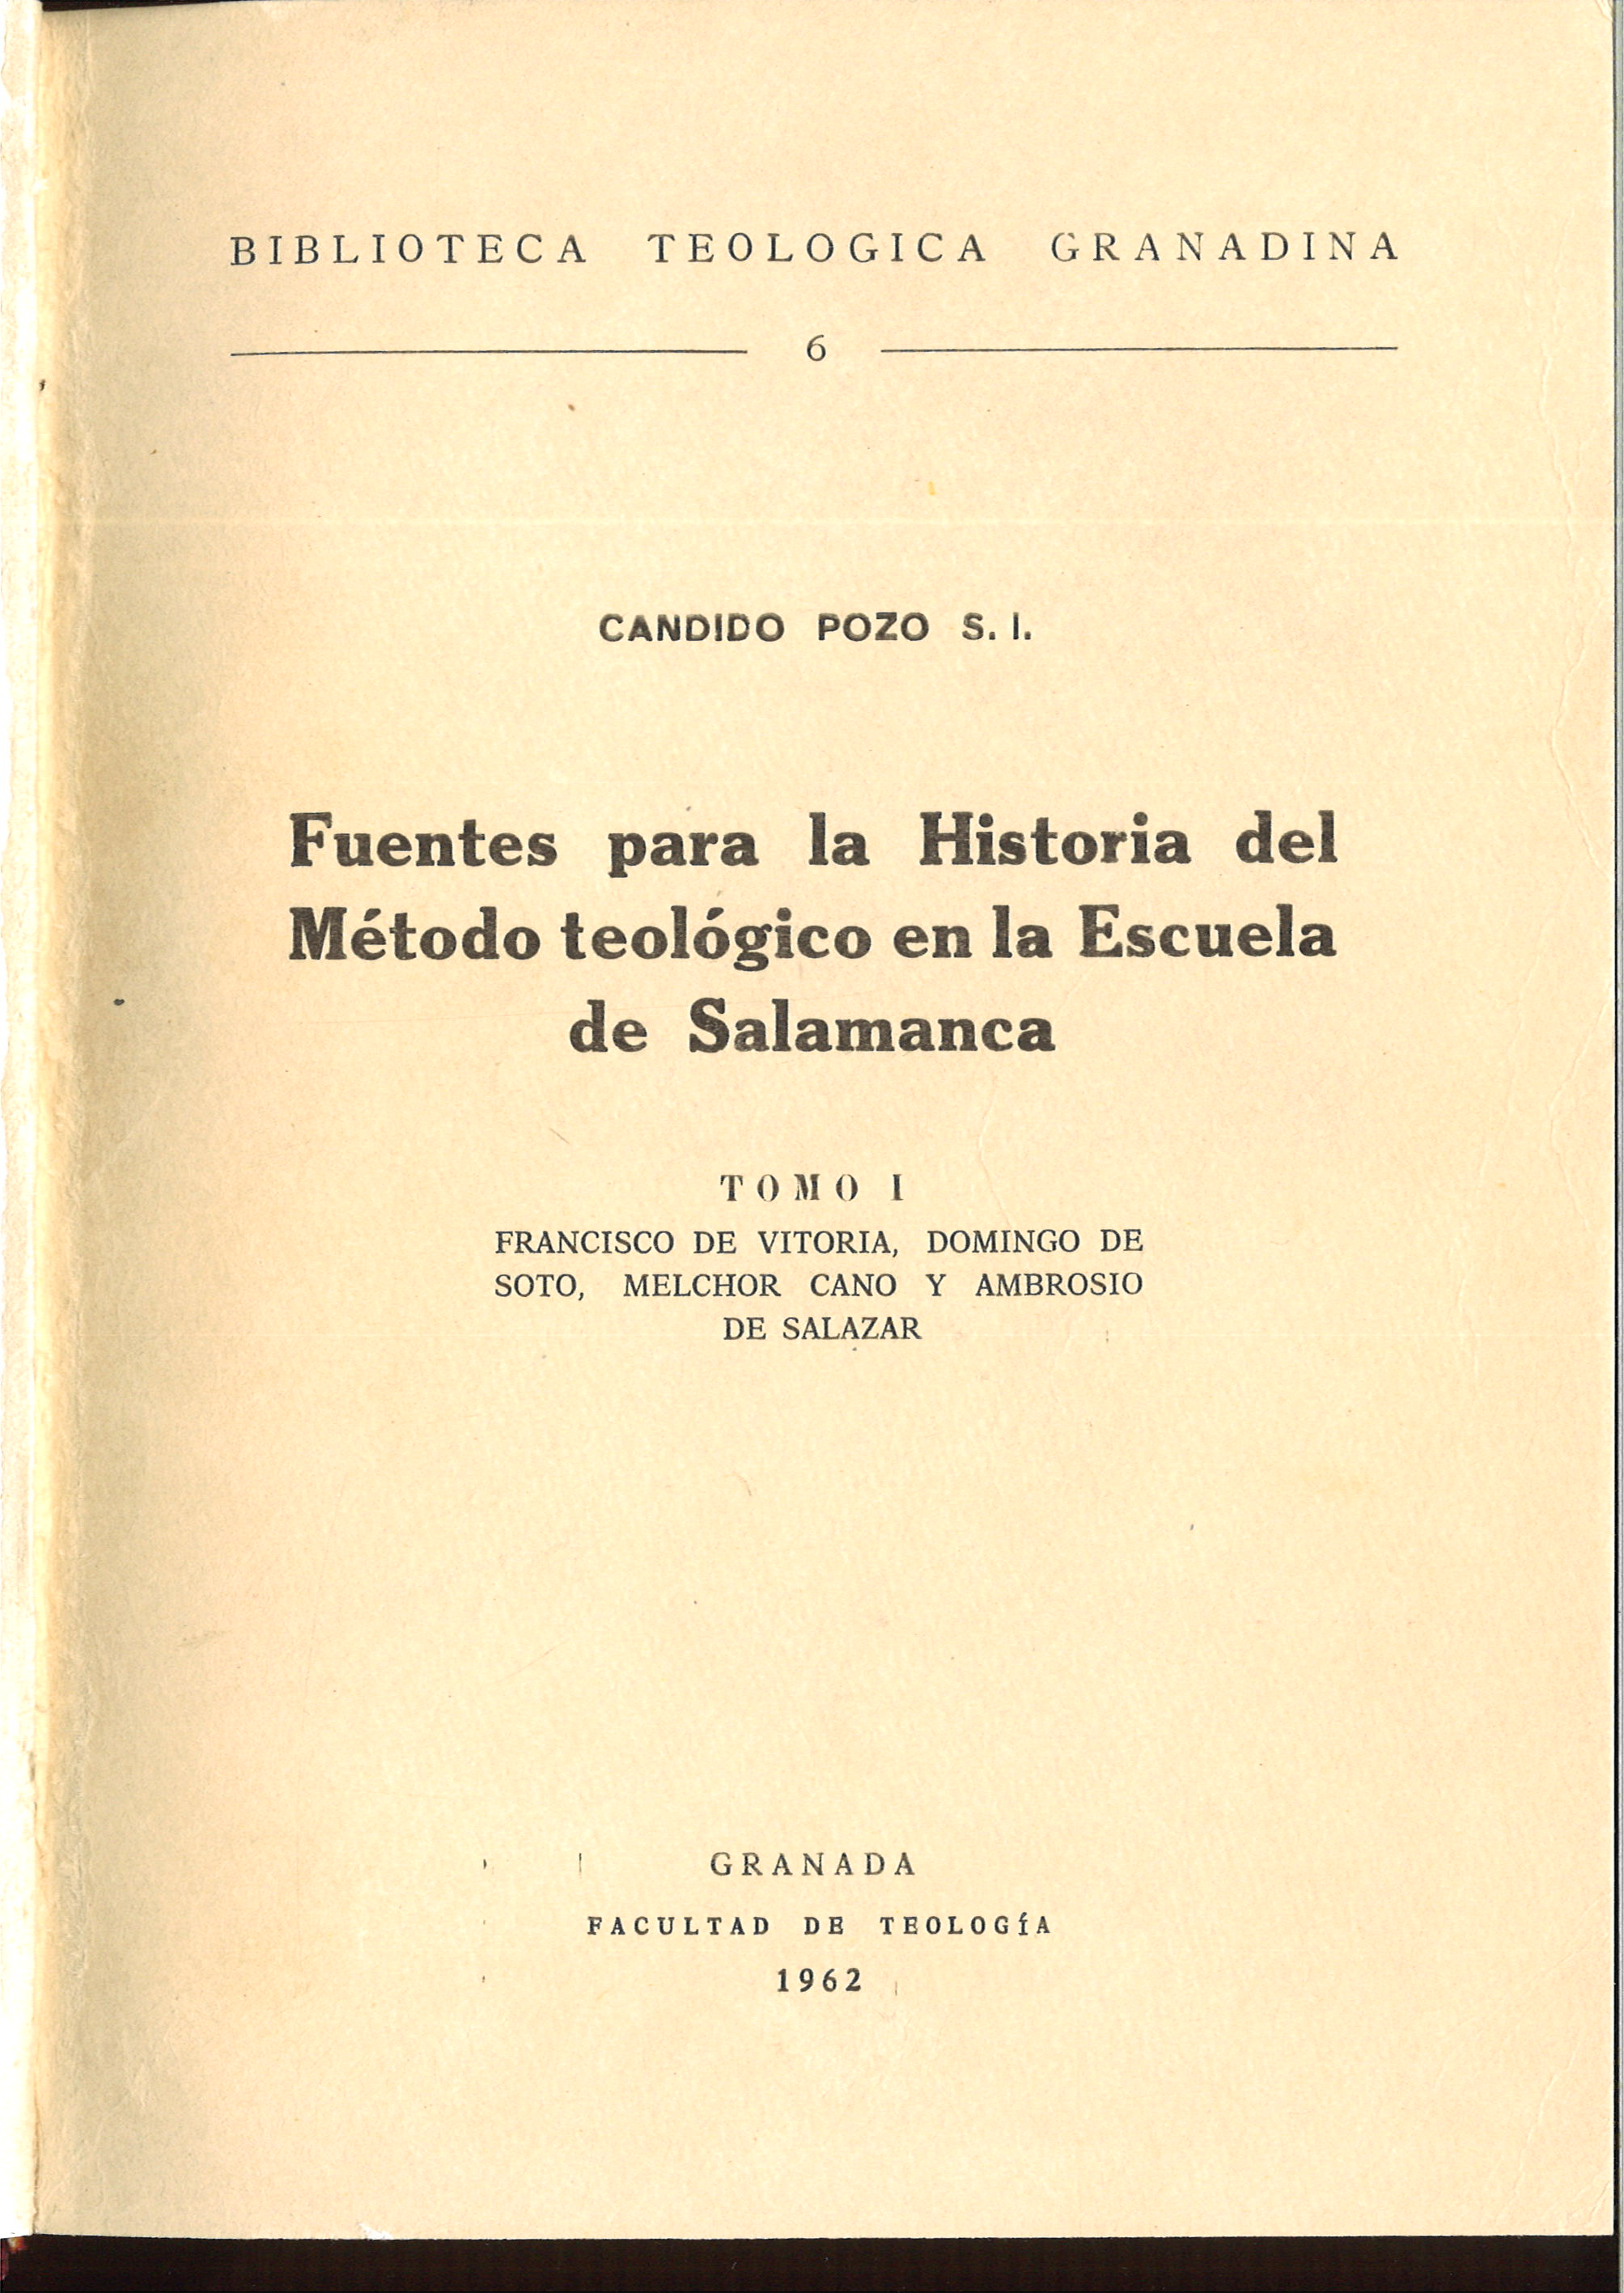 Imagen de portada del libro Fuentes para la historia del método teológico en la Escuela de Salamanca